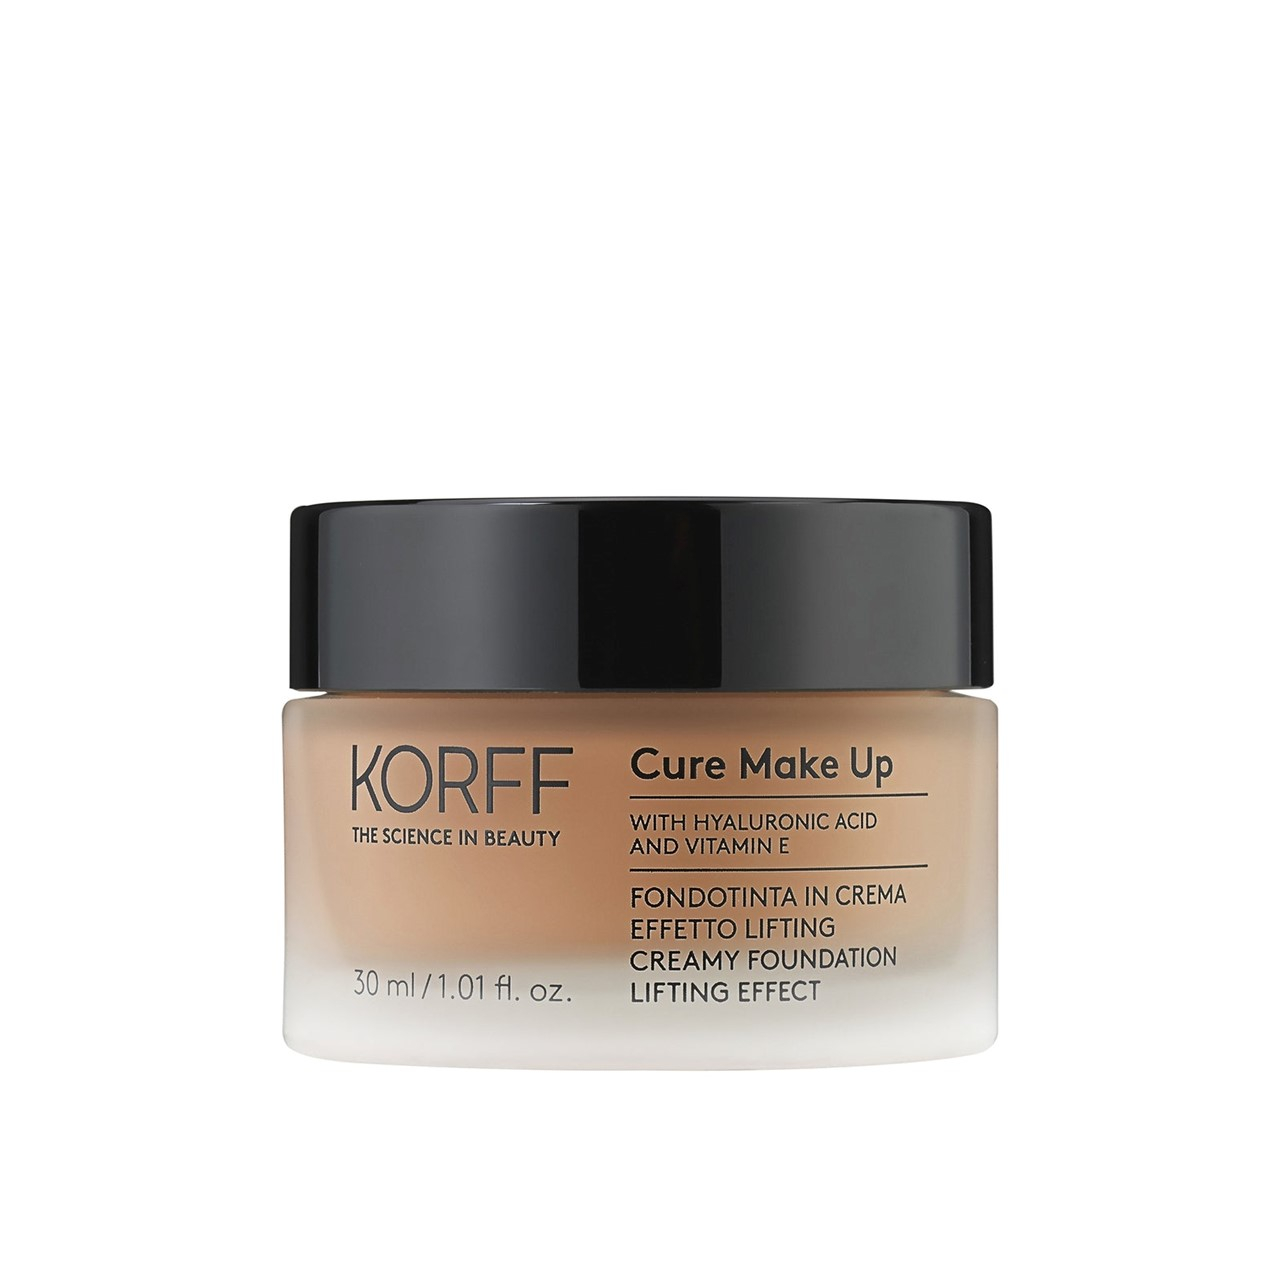 Korff Cure Make-Up Creamy Foundation Lifting Effect 06 30ml (1.01 fl oz)